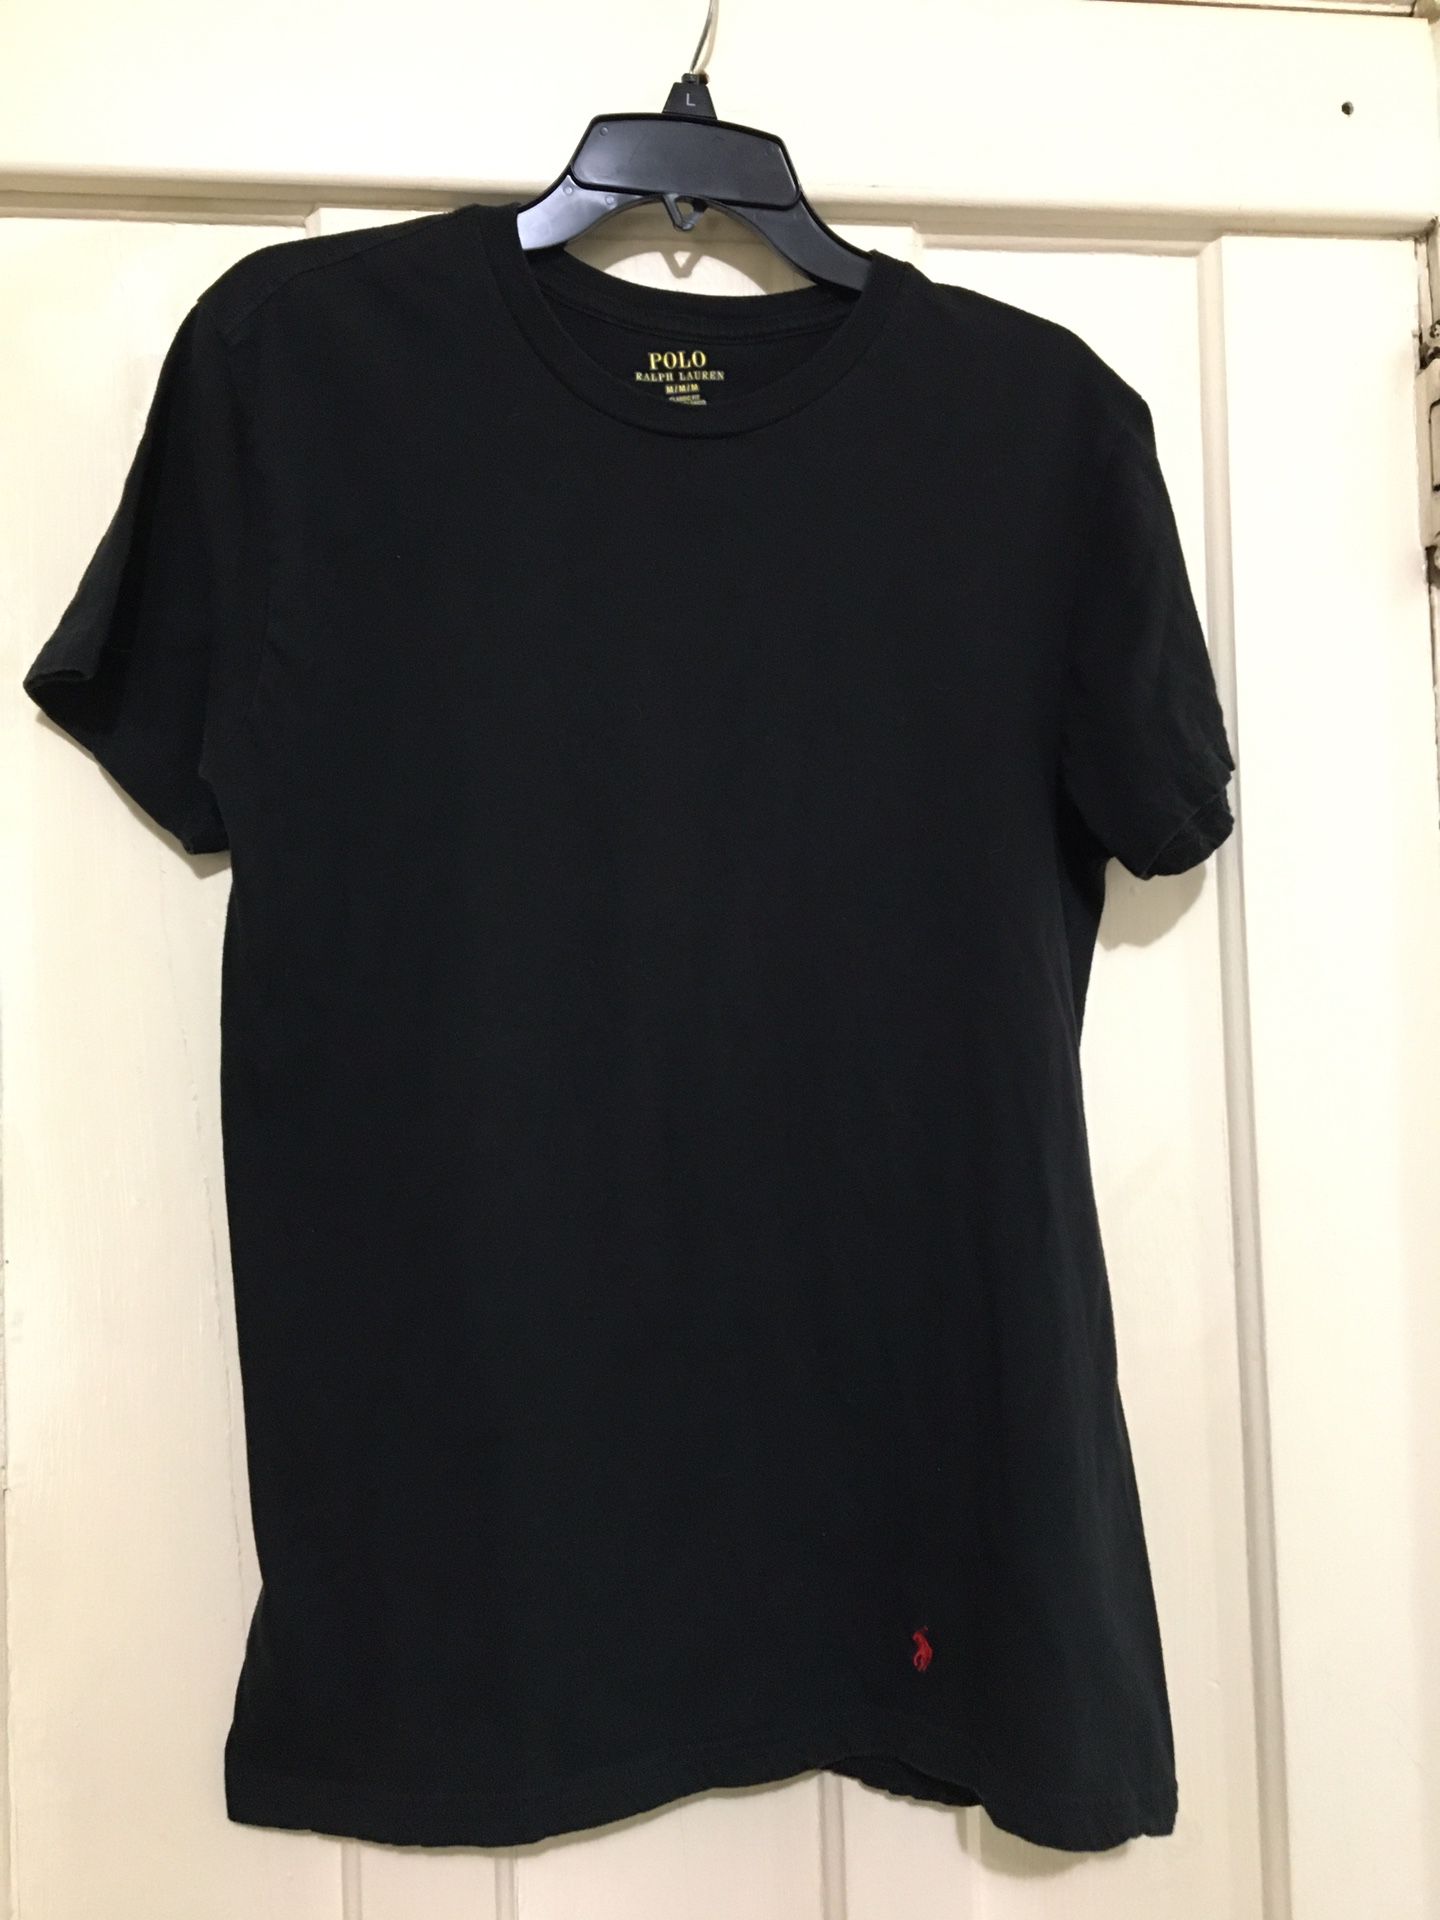 Polo Ralph Lauren T-shirt /medium Men’s 